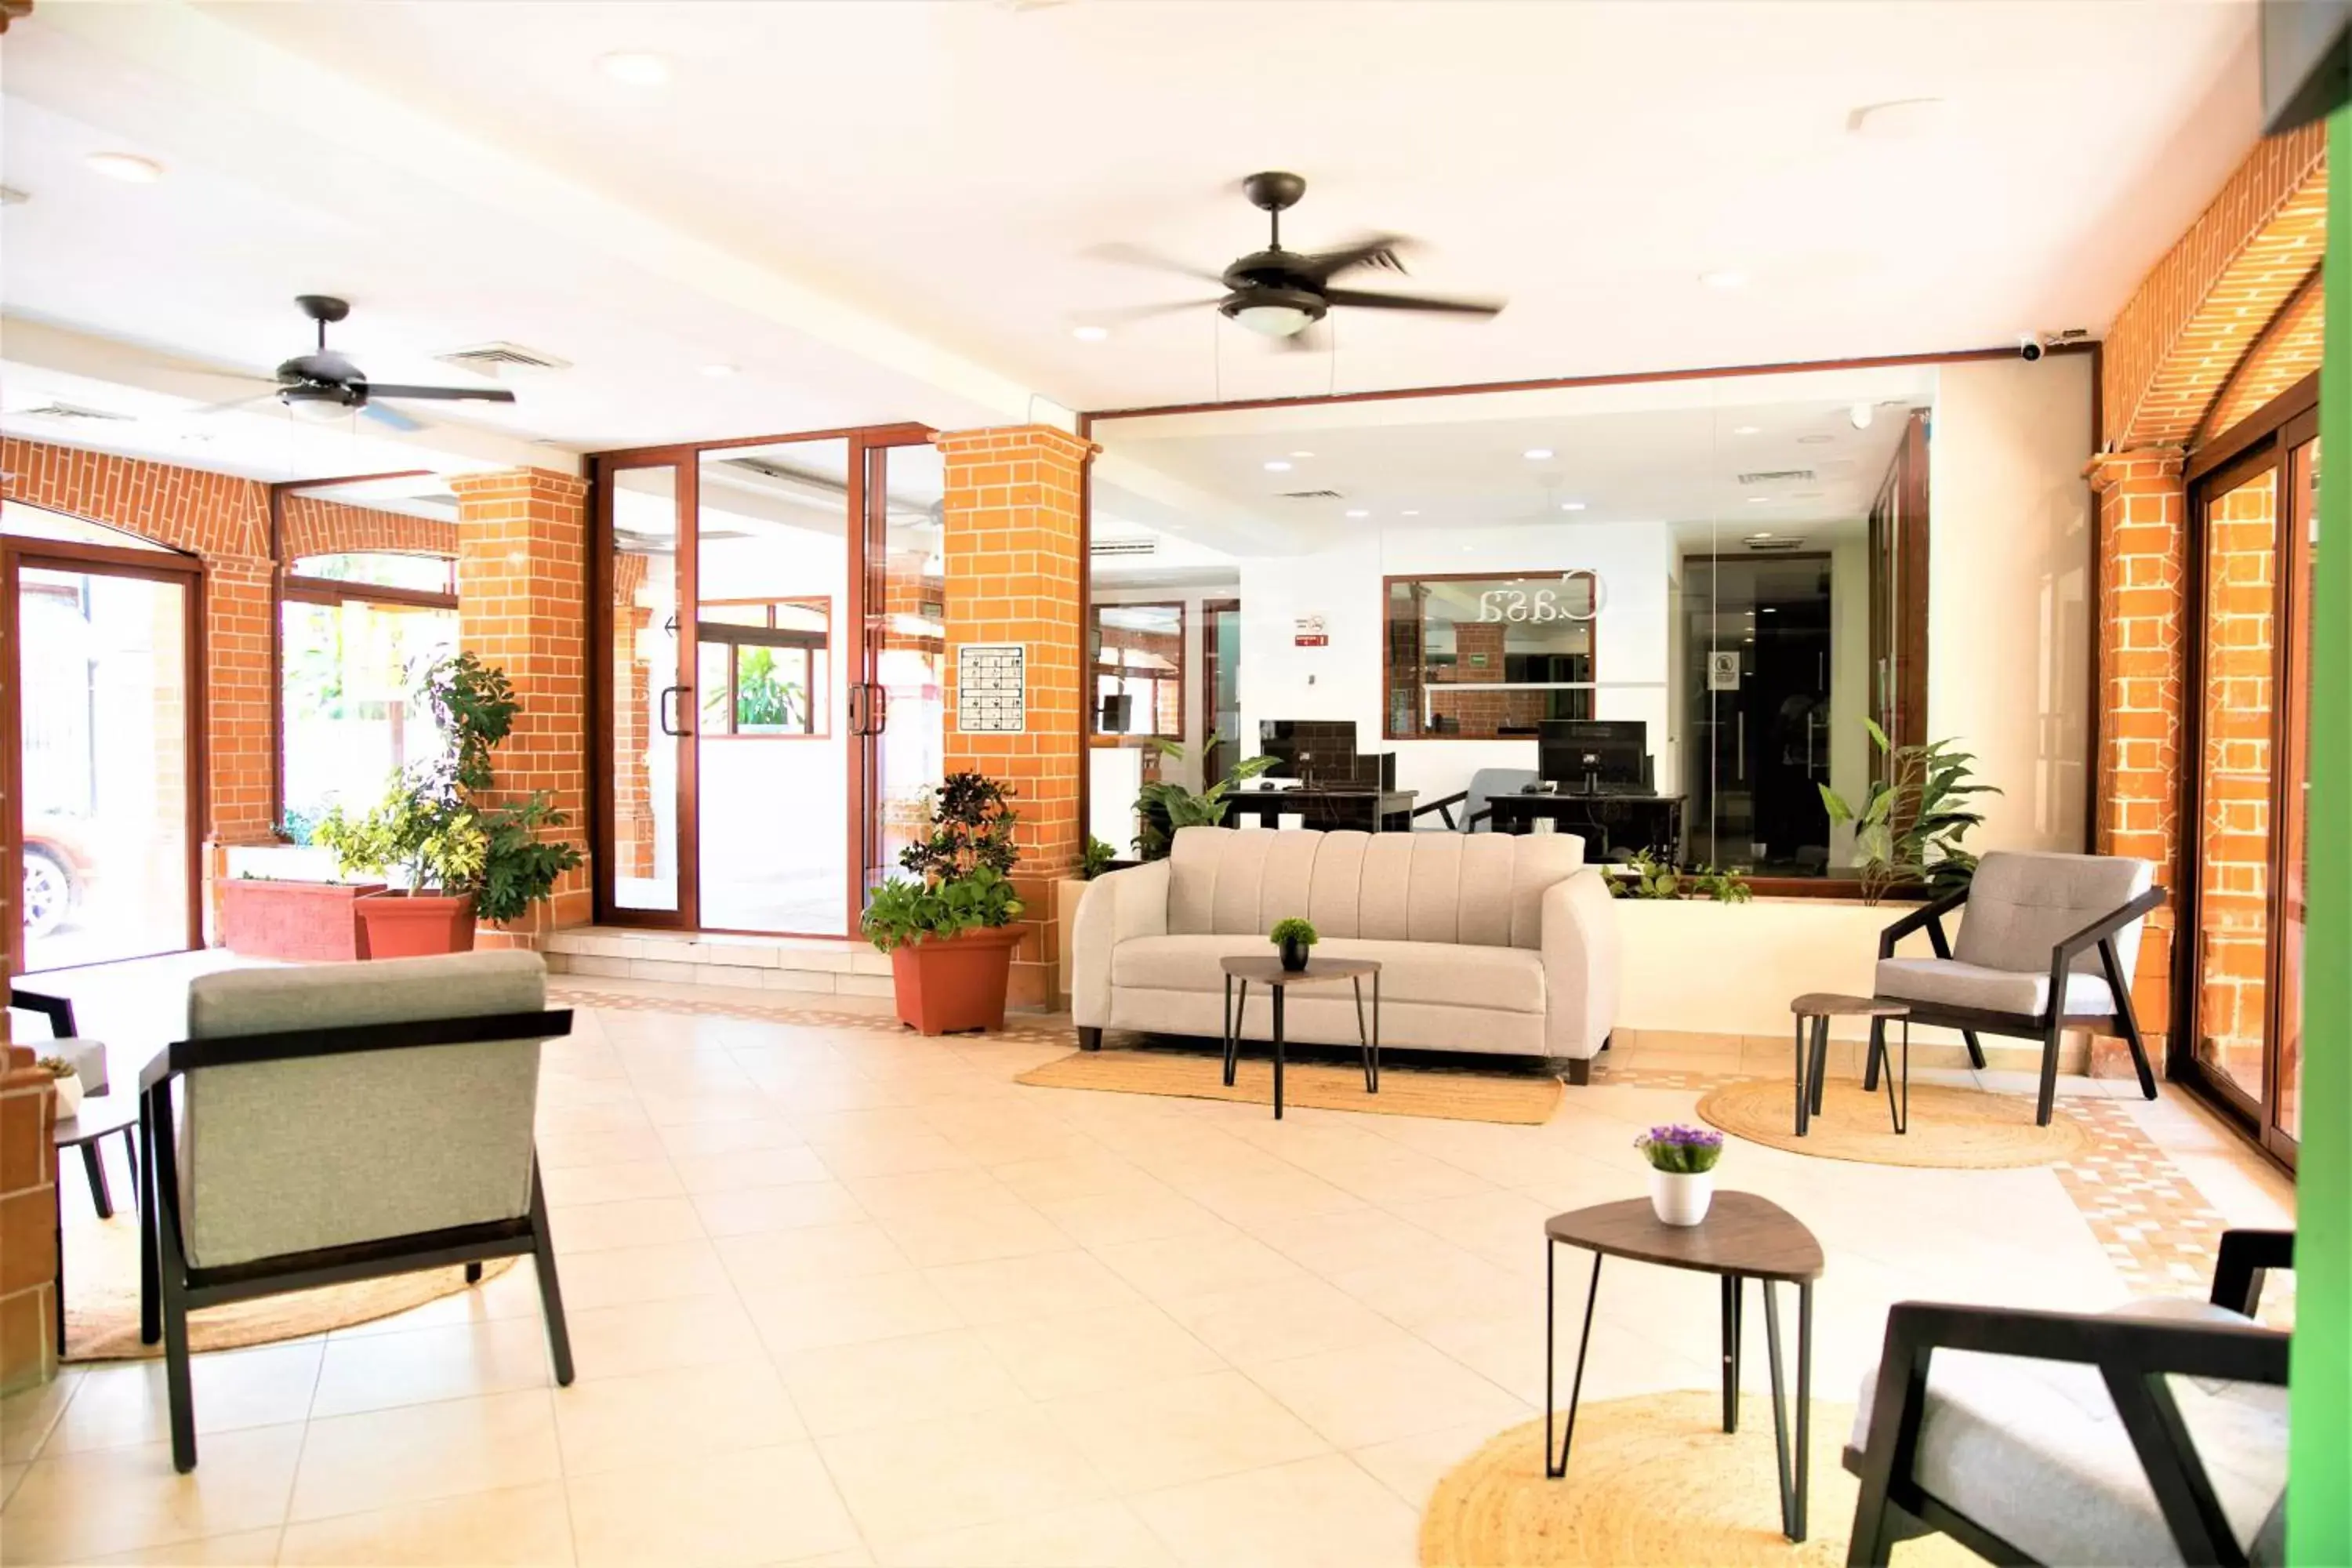 Lobby or reception, Lobby/Reception in Hotel Colonial Playa del Carmen